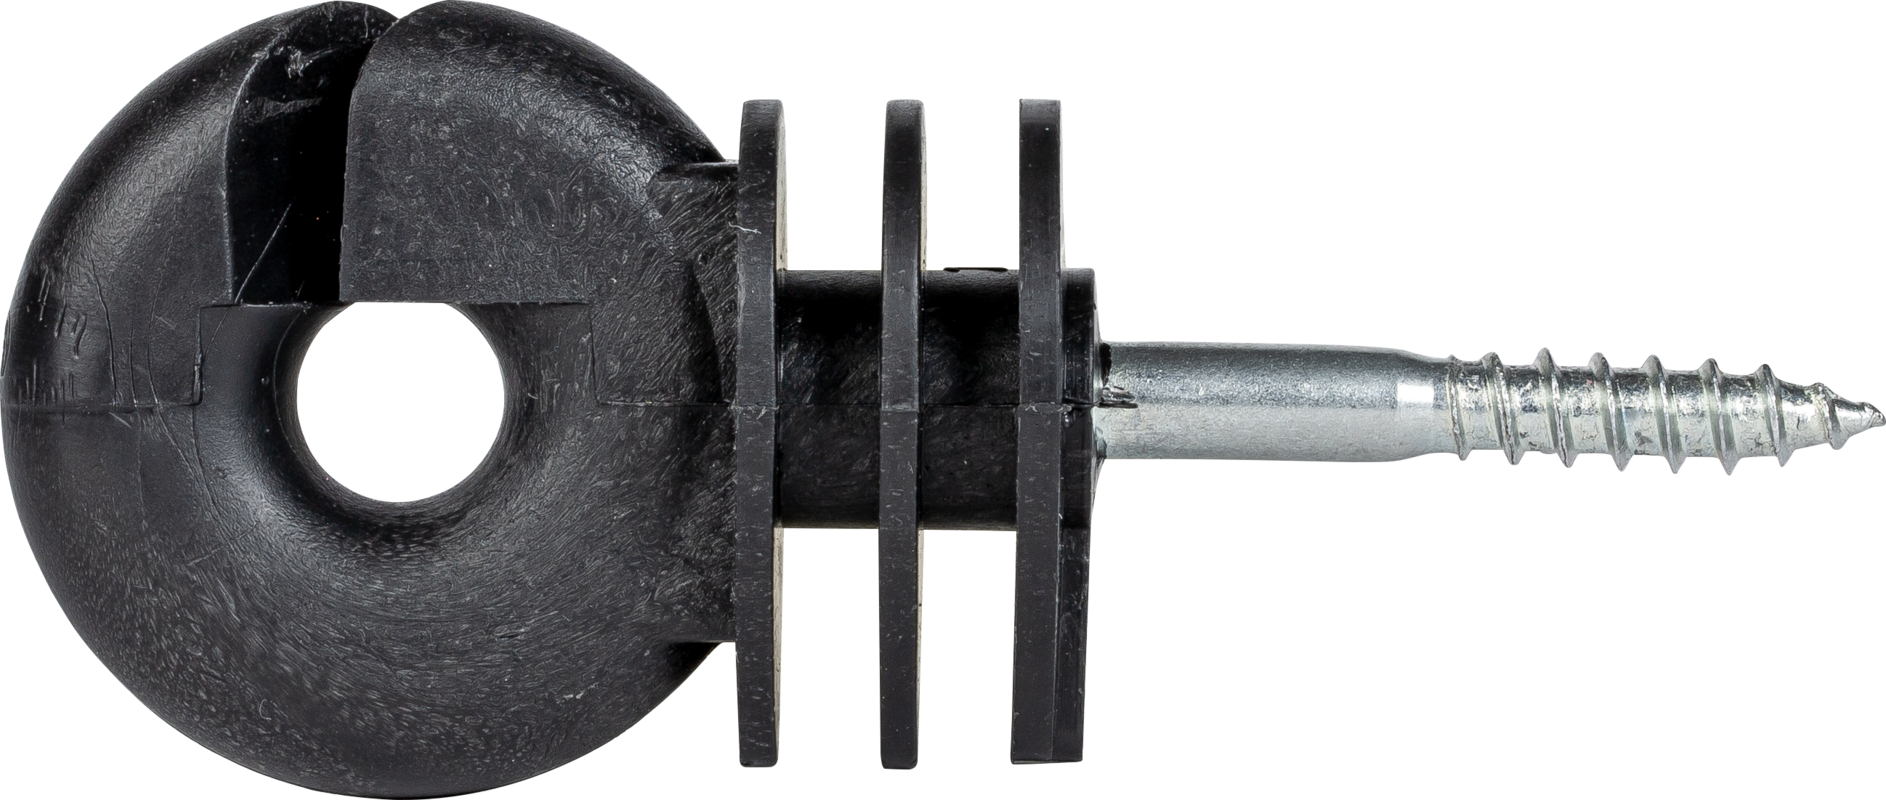 Ringisolator met houtdraadschroefdraad 6 mm schacht, (25 st./pak)